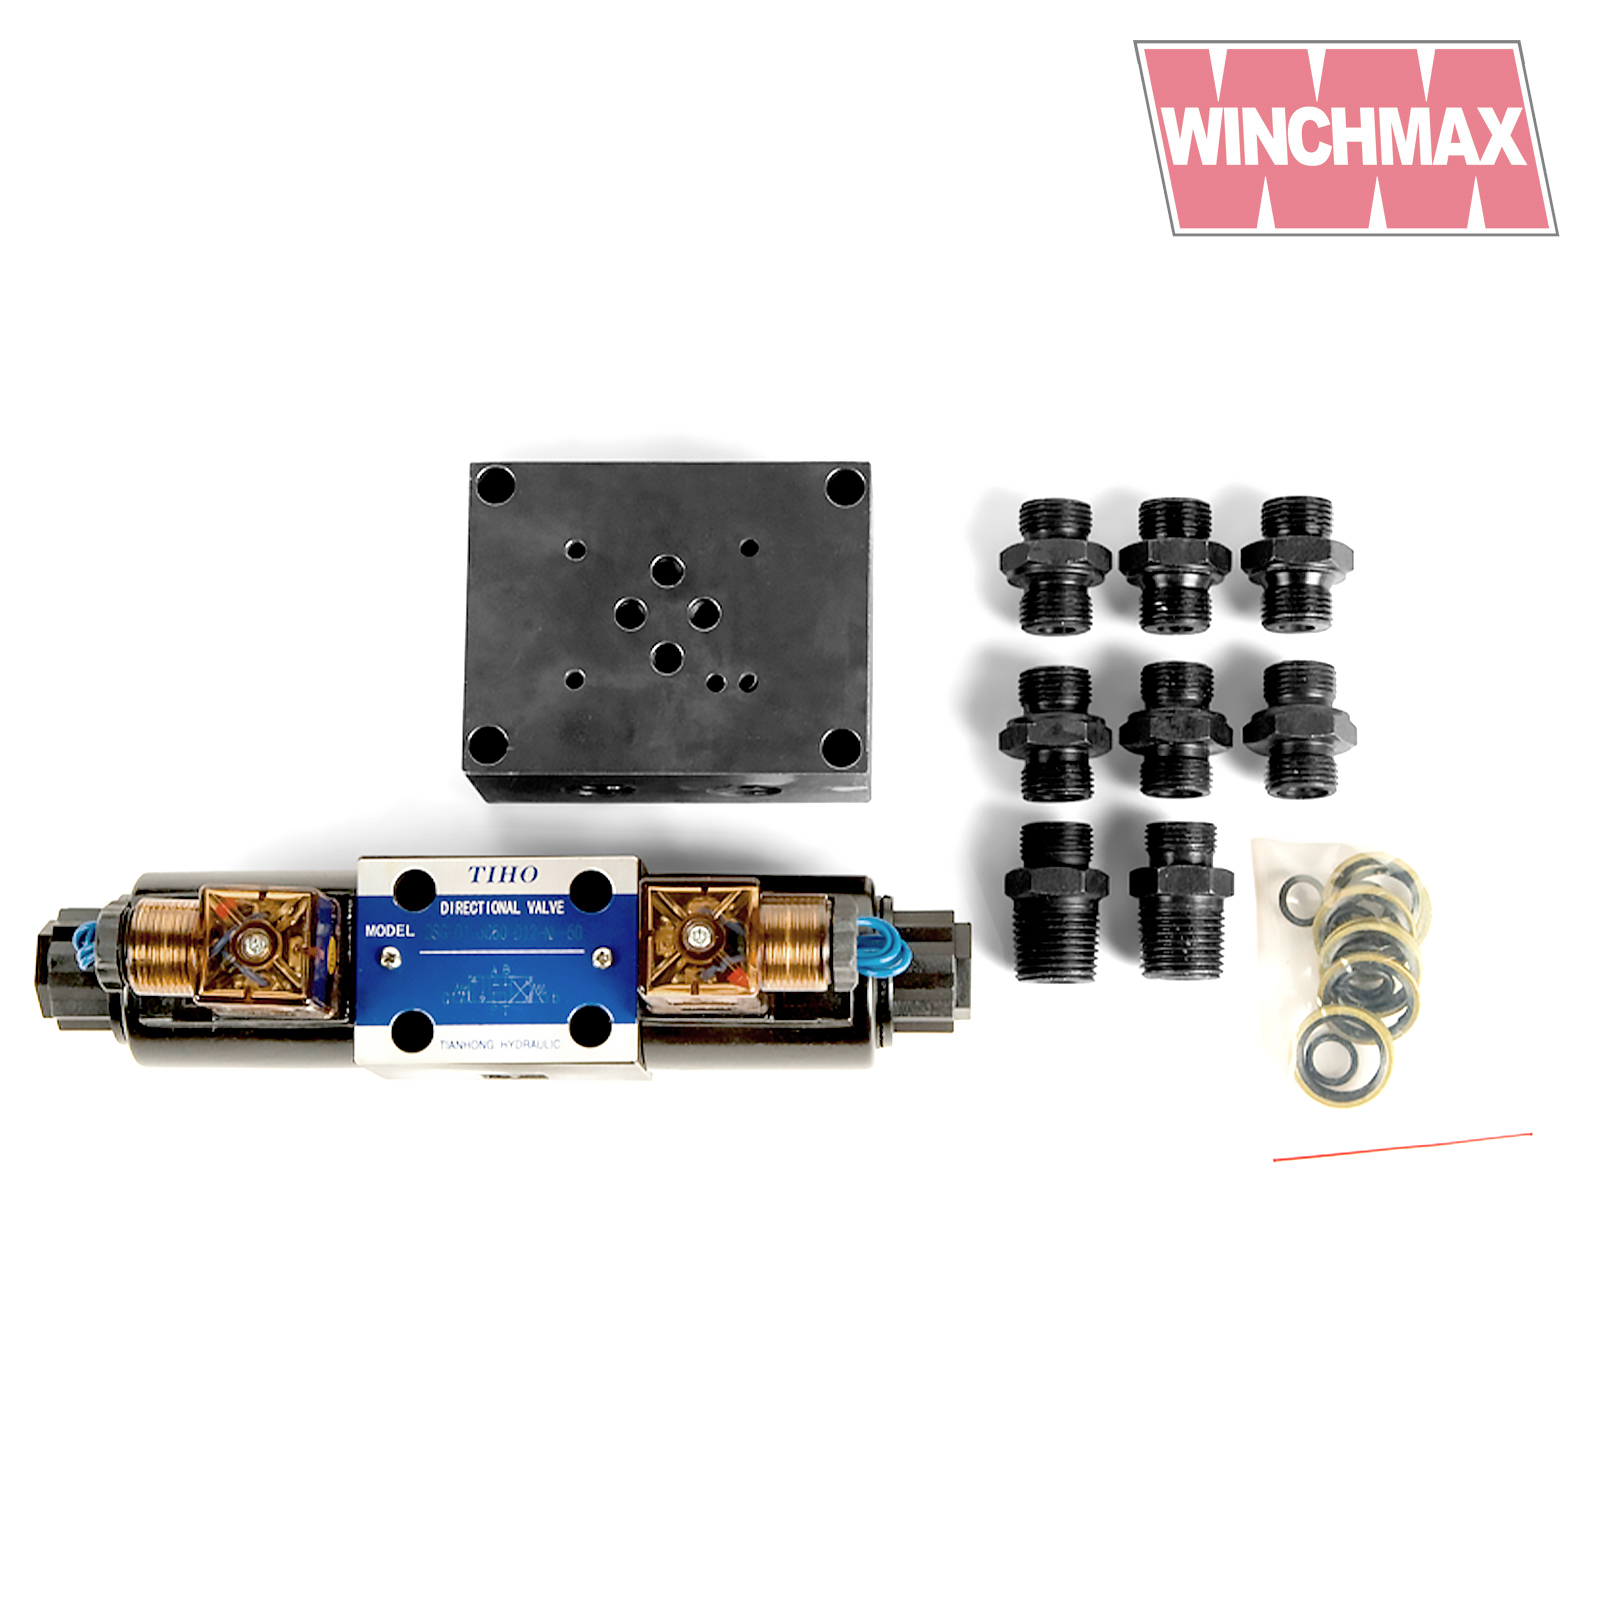 Winchmax Hydraulic Control Kit